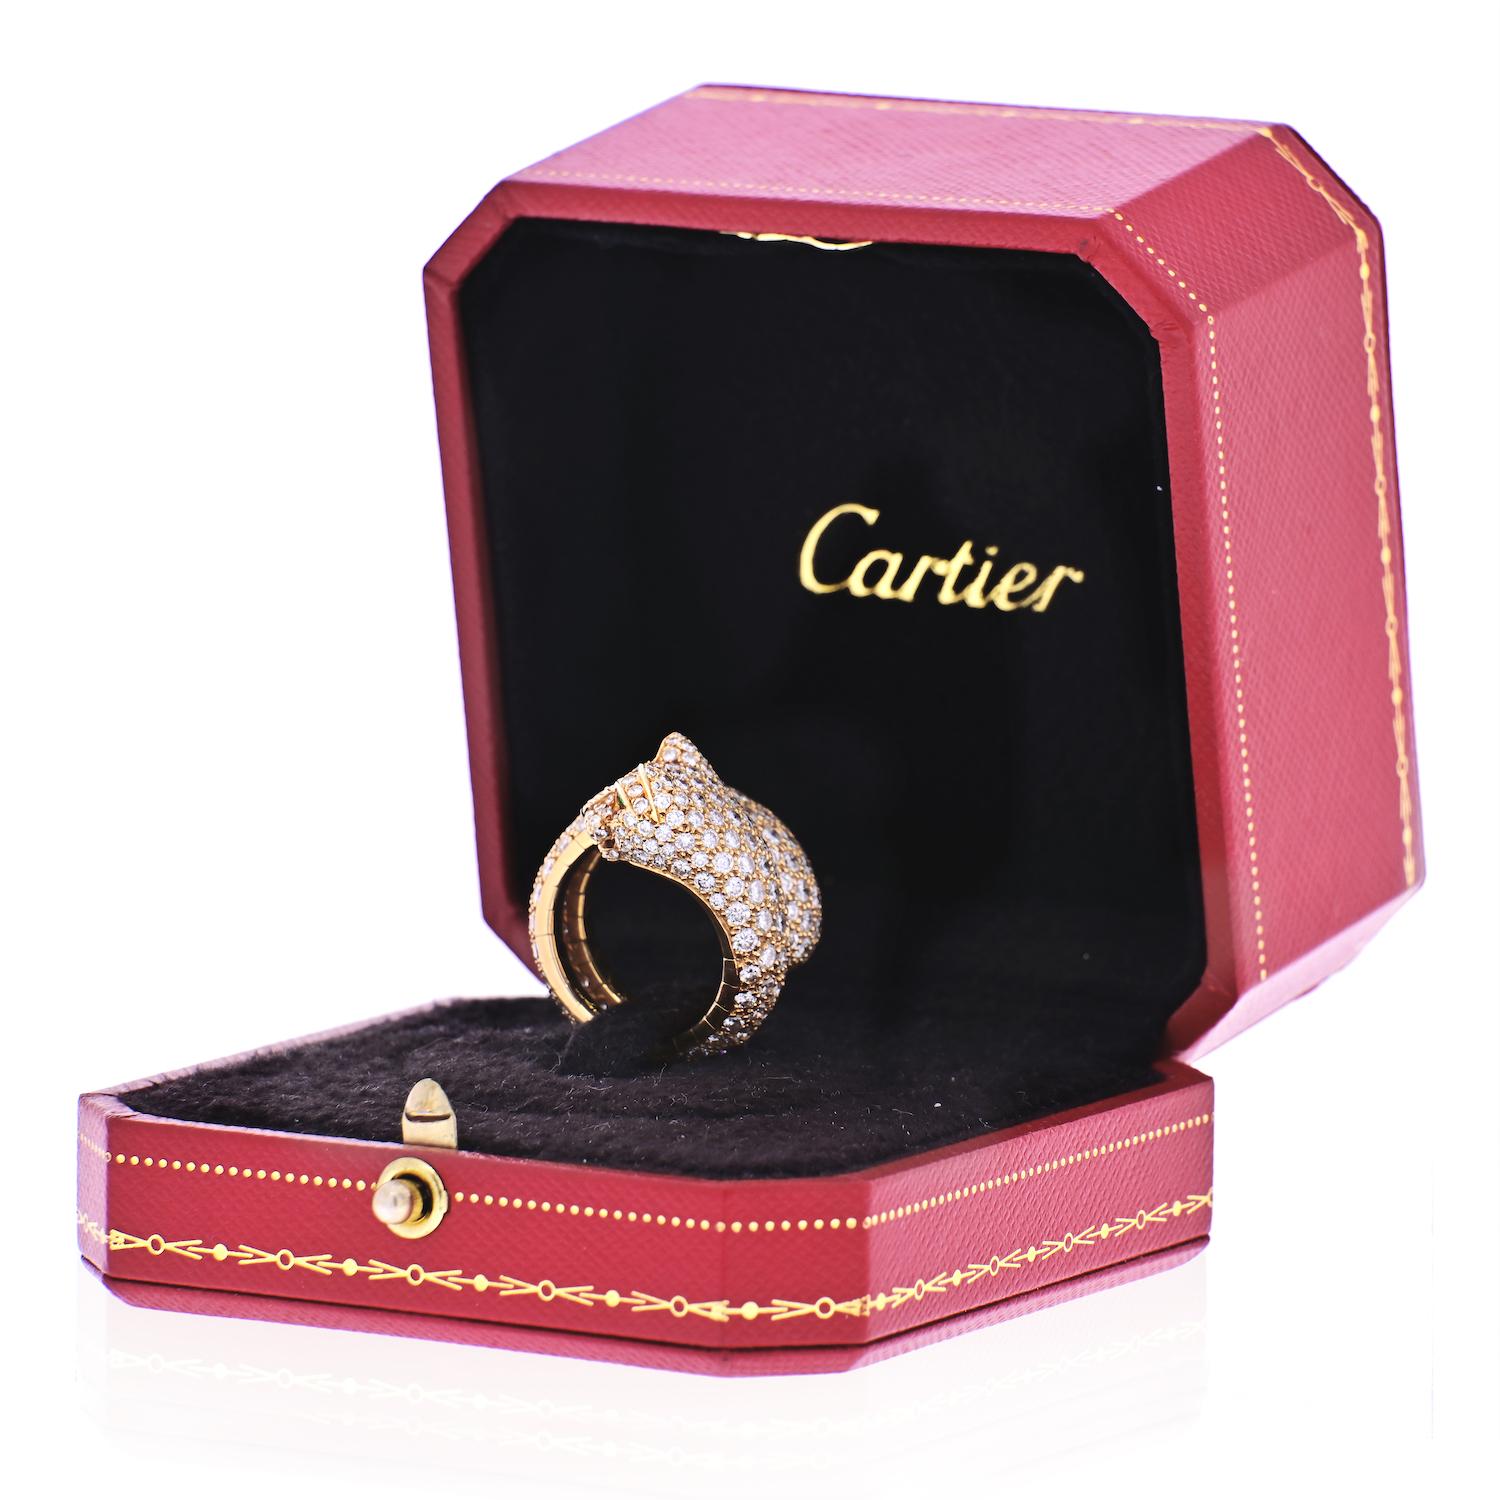 Der Inbegriff der Eleganz: der prächtige Ring Carter Panther Lakarda im Vintage-Stil. Dieser Ring ist mit ca. 6,5 Karat gepflasterten Diamanten verziert und strahlt Opulenz und Raffinesse aus. Sein einzigartiger Federmechanismus verleiht ihm einen